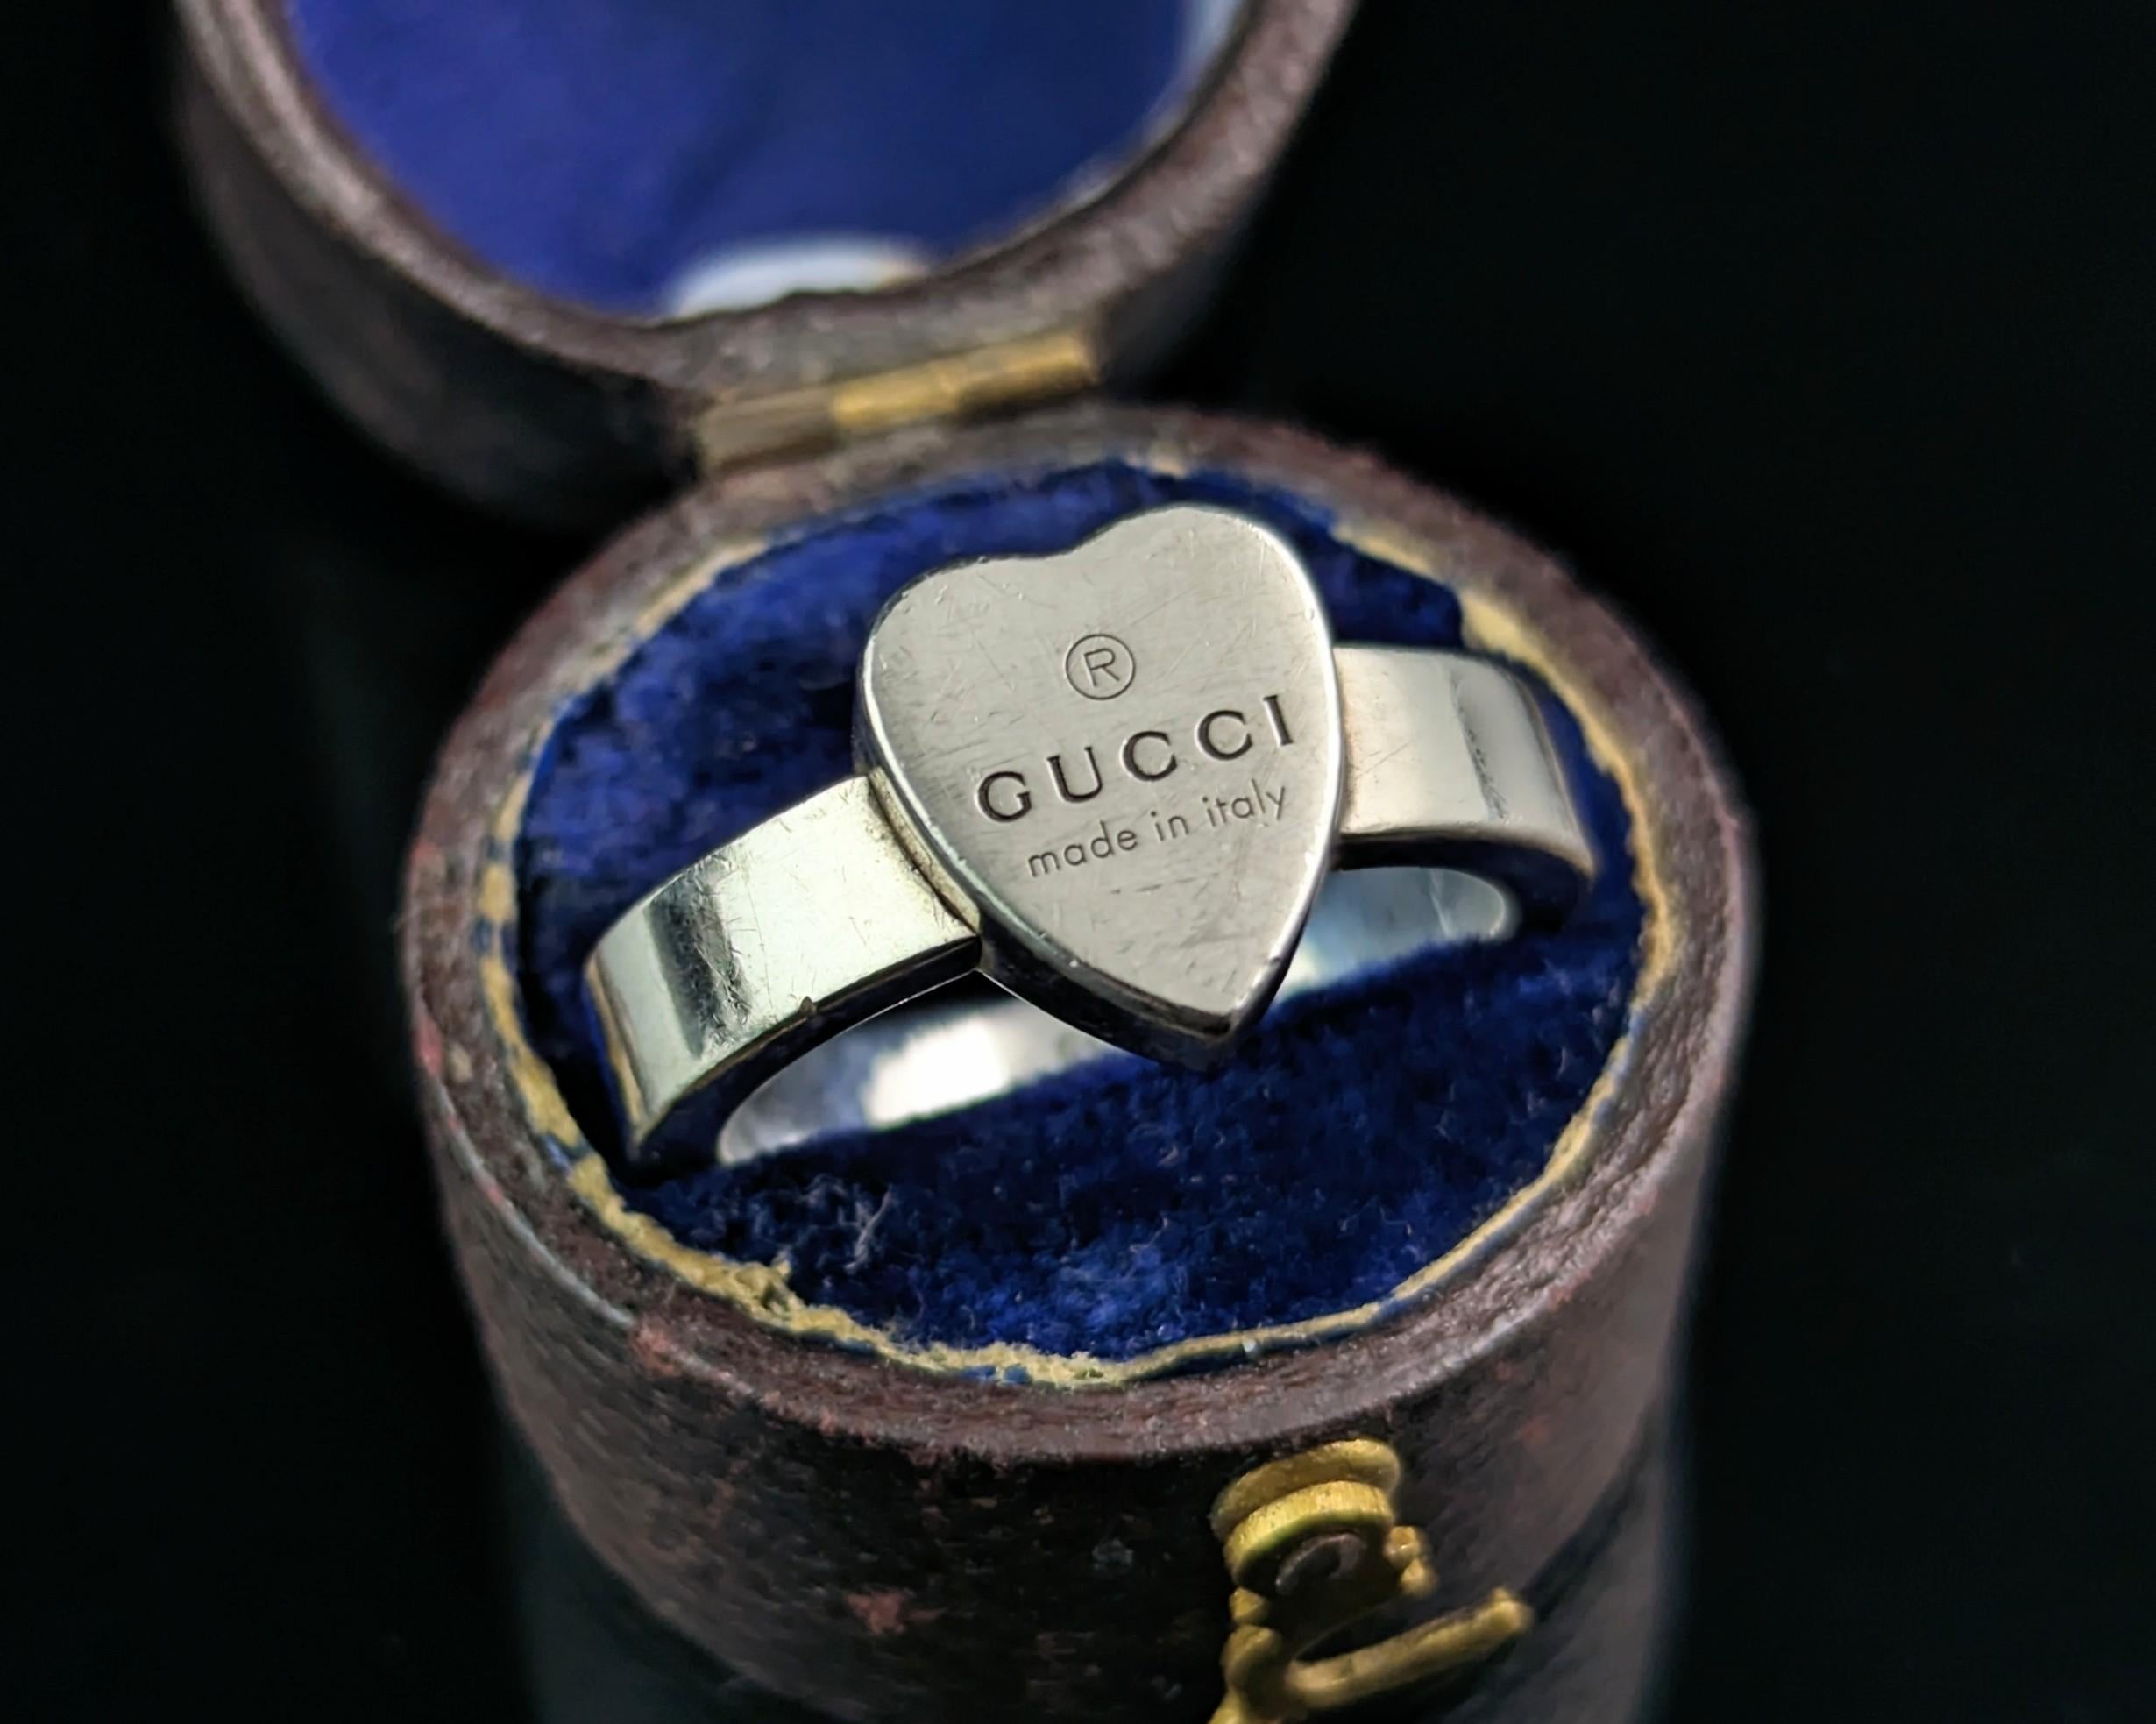 Un elegante anillo de plata de ley Gucci con la marca del corazón.

Una pieza clásica y atemporal de la década de 2000, se trata de un anillo estilo banda grueso similar a un anillo de sello con la cara en forma de corazón. 

Una buena pieza sólida,